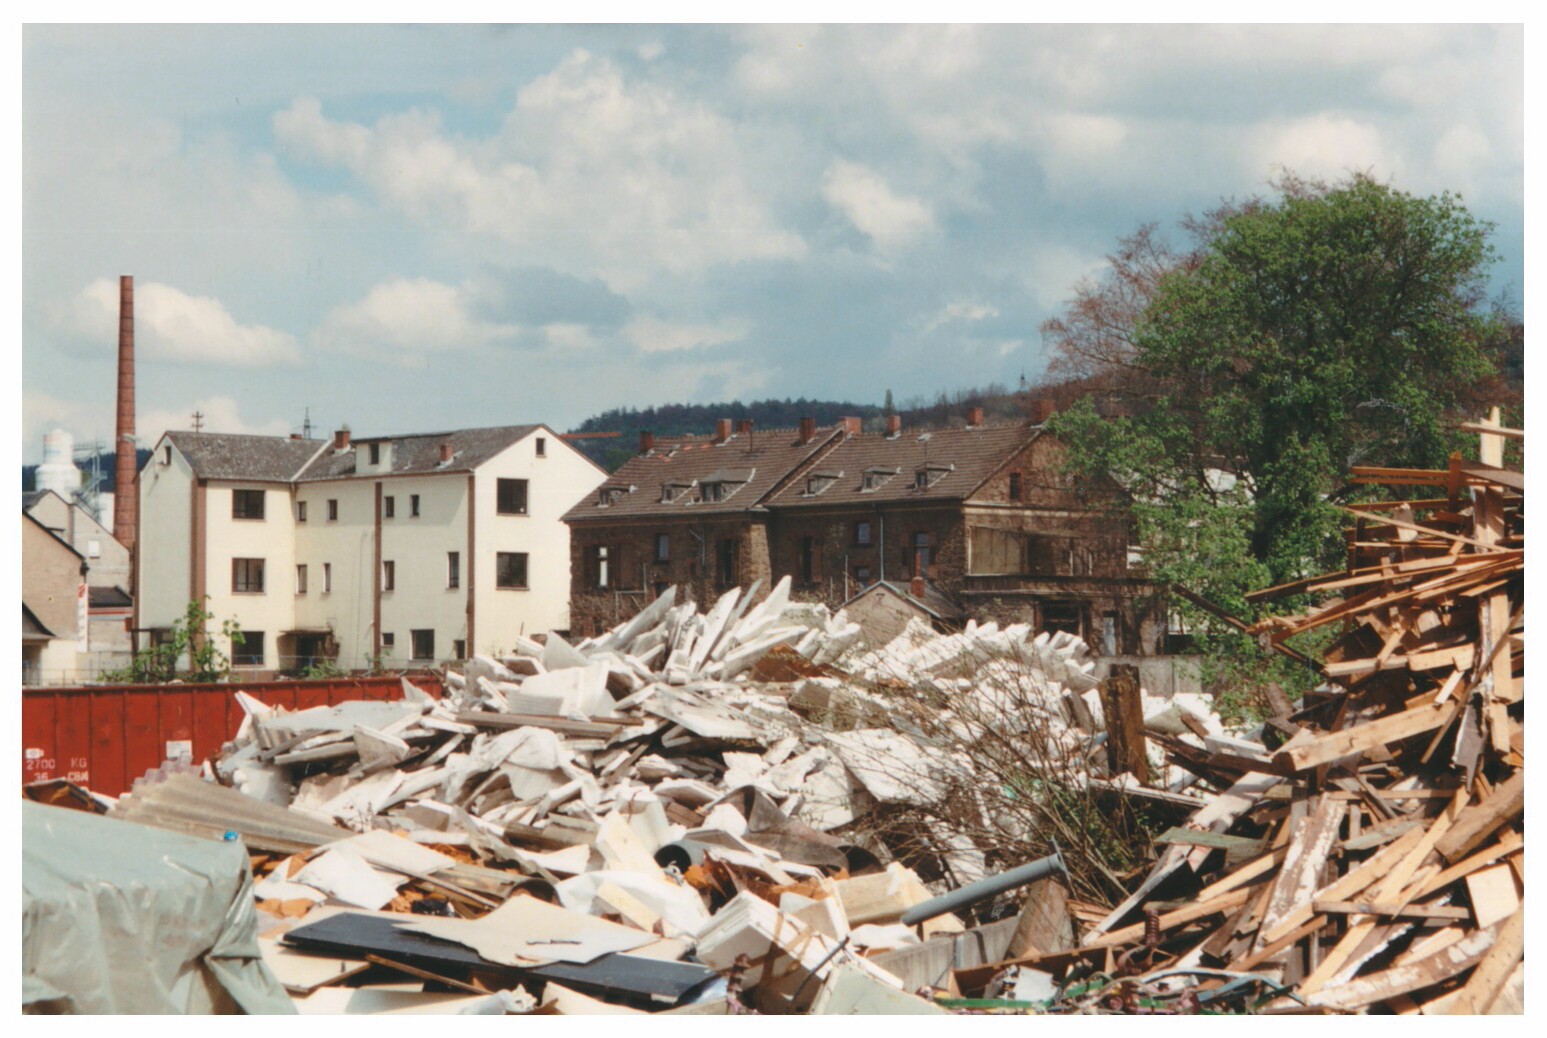 Schuttberge beim Abriss der Didier-Werke Bendorf, 1999 (Stiftung Sayner Hütte, Rheinisches Eisenkunstguss-Museum CC BY-NC-SA)